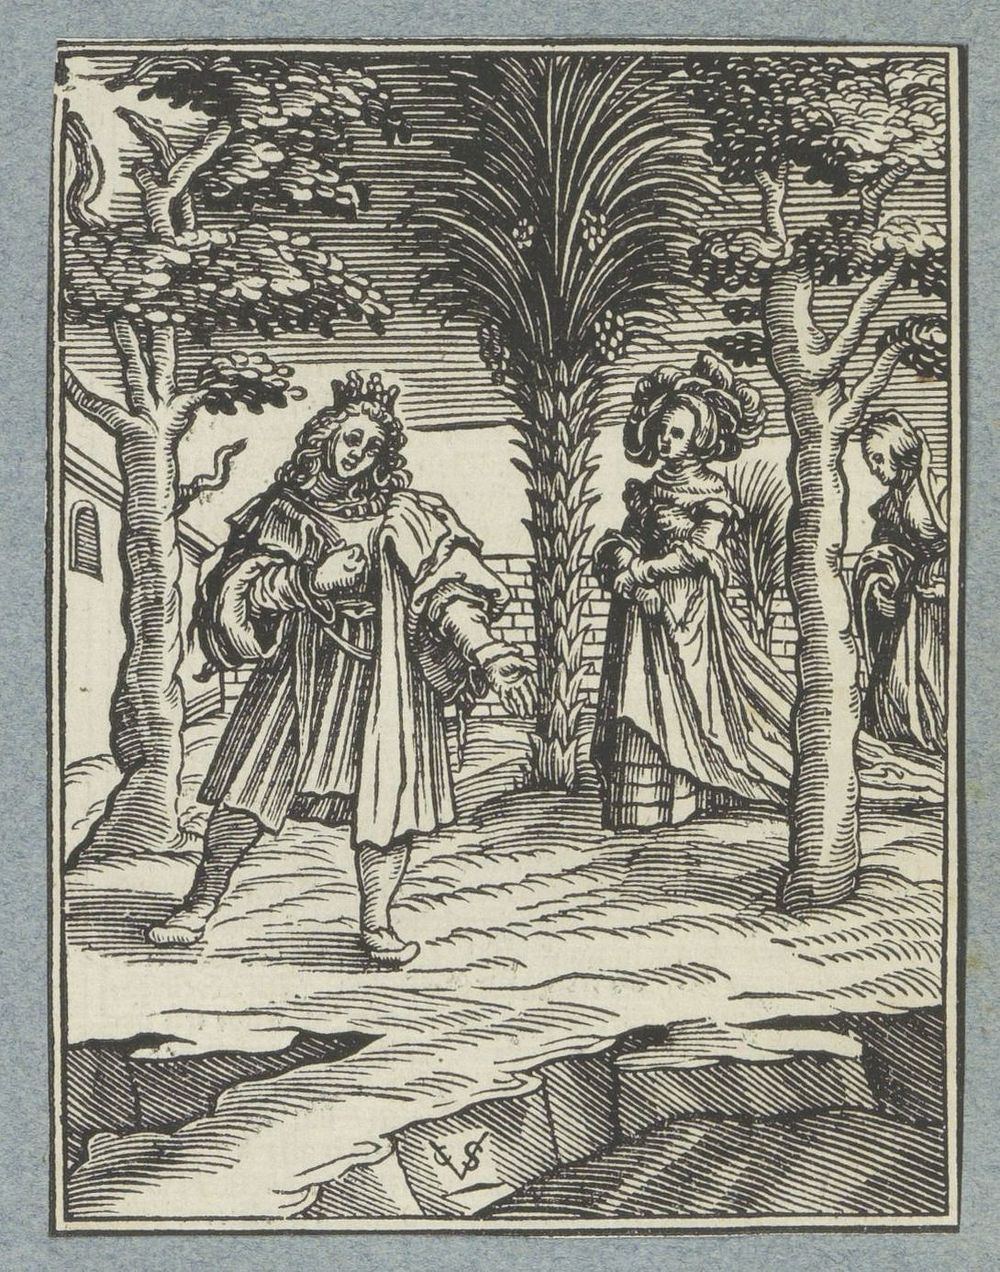 Man wordt verleid door lichtzinnige vrouw (1645 - 1646) by Christoffel van Sichem II, Christoffel van Sichem III, Veit…